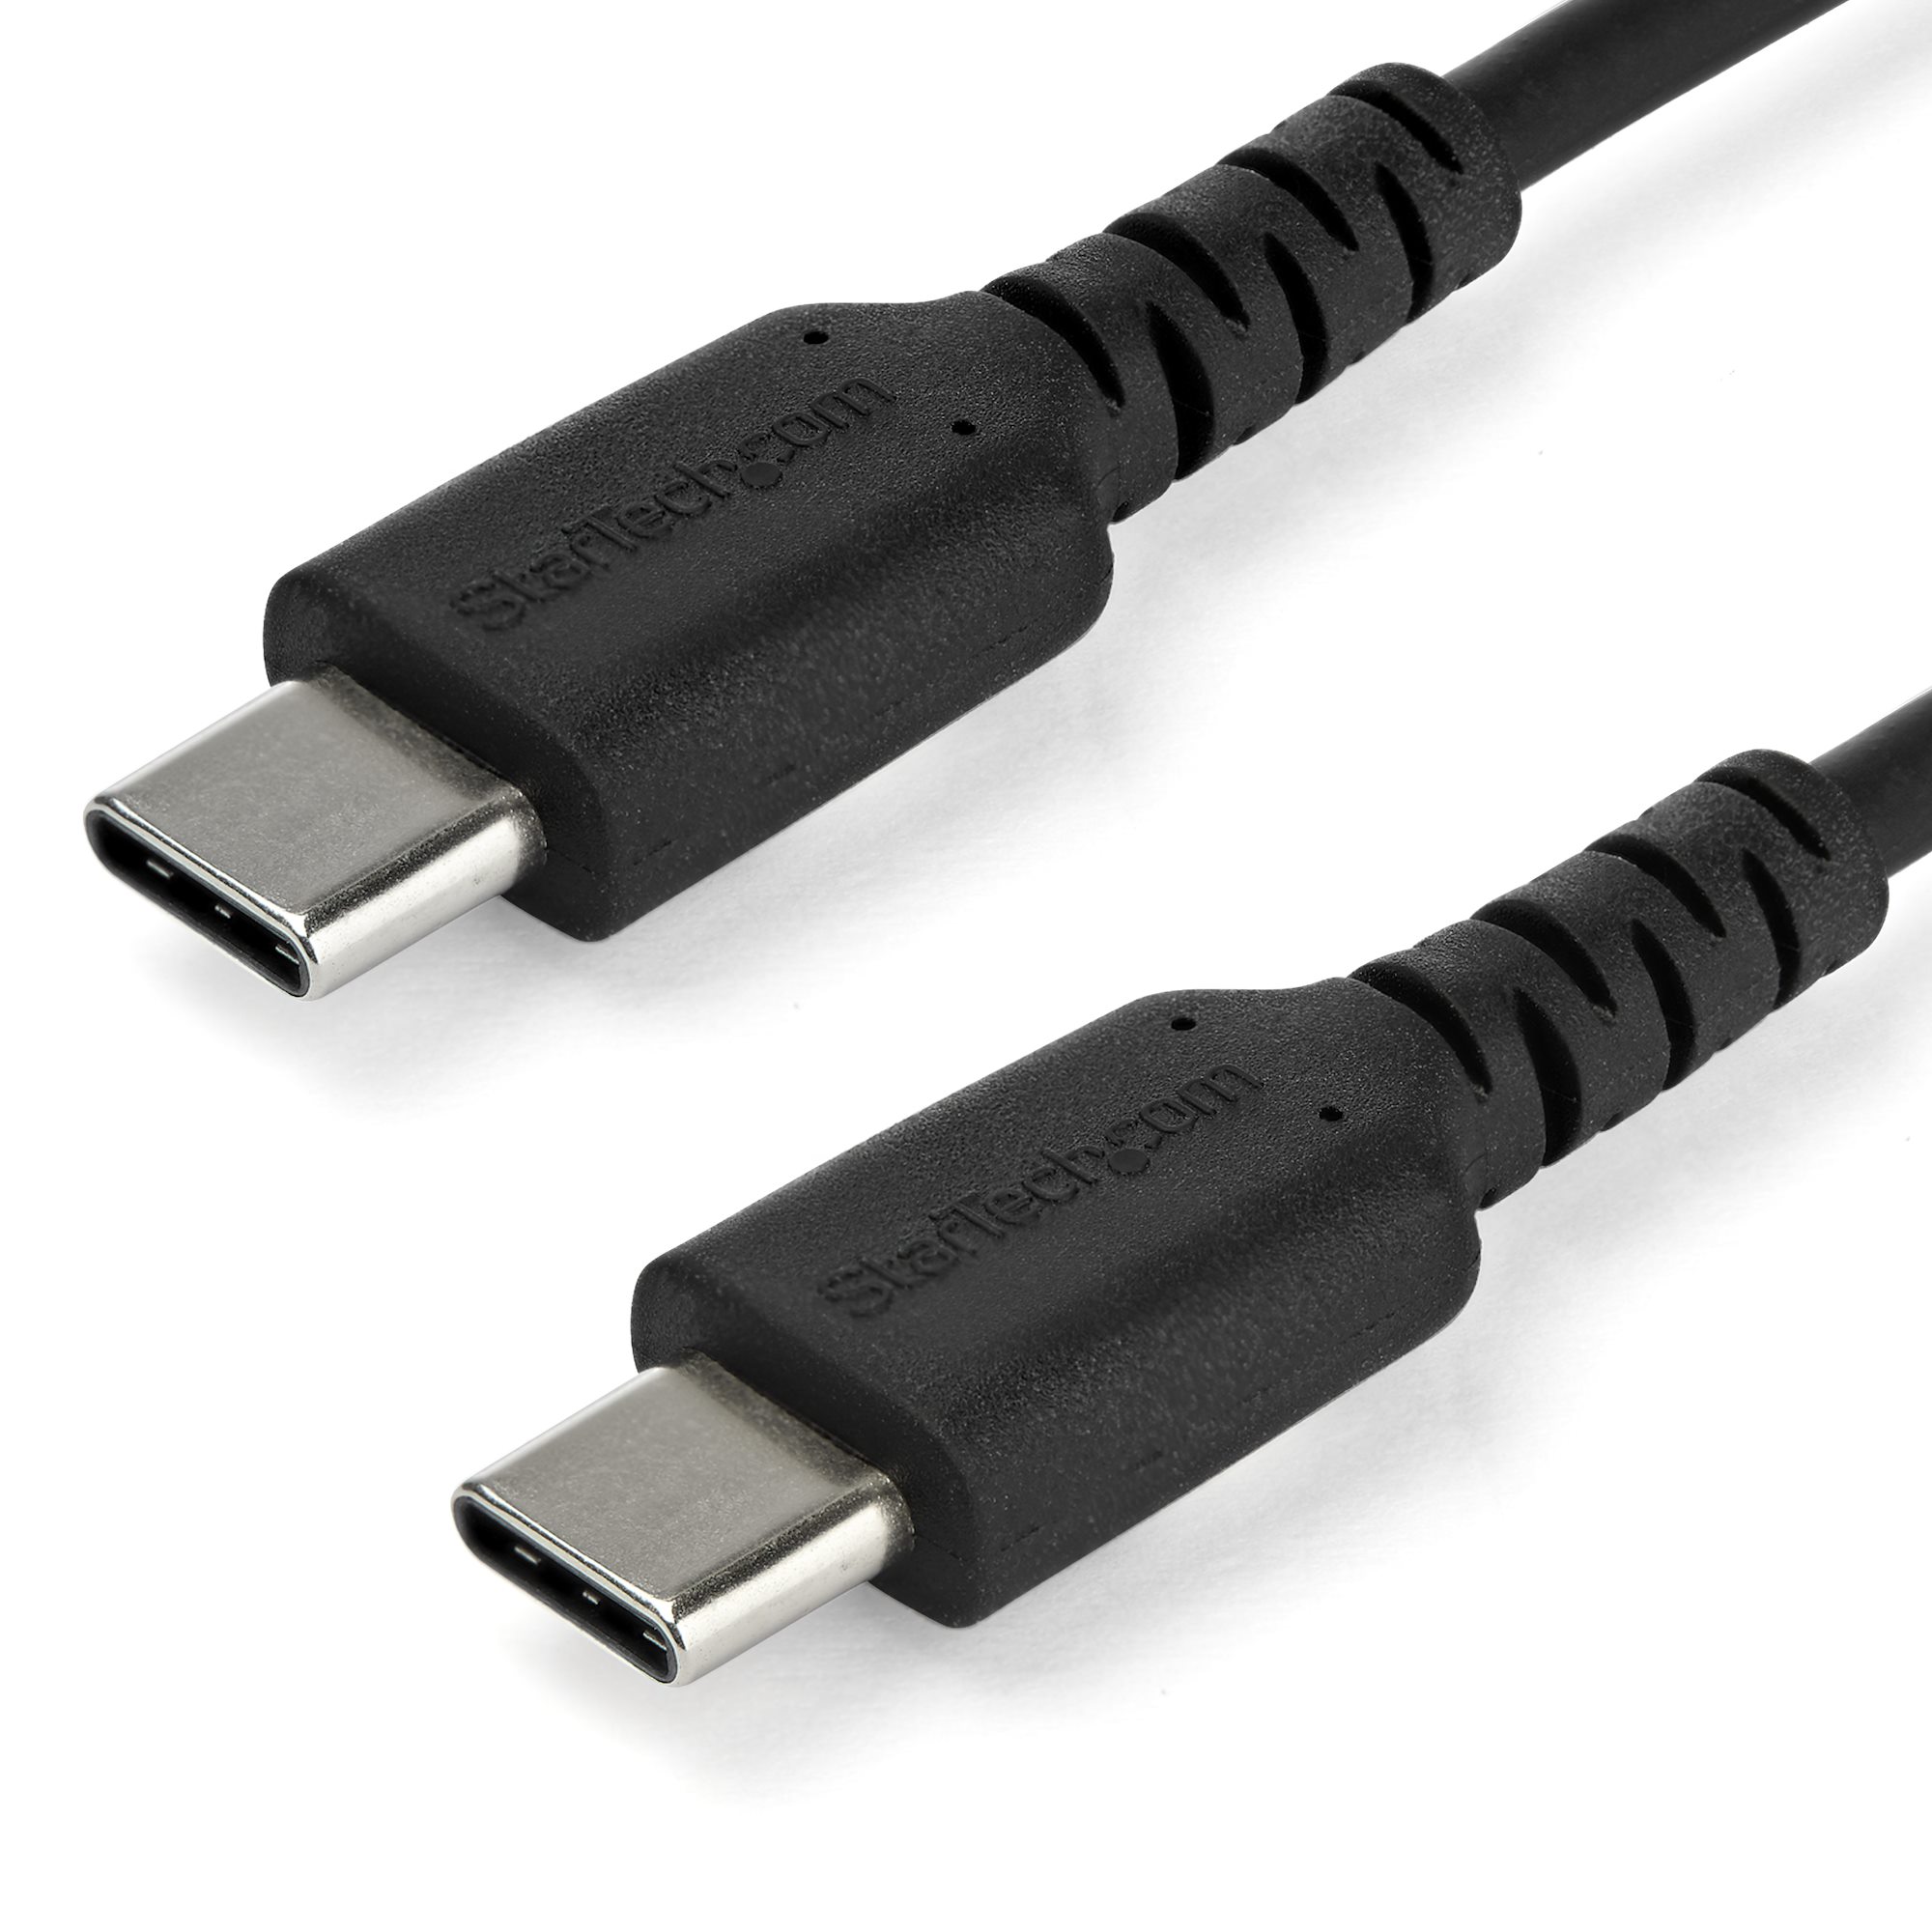 Mexico Bøje Pasture 2m USB C Charging Cable Durable Cord 60W - USB-C Cables | StarTech.com